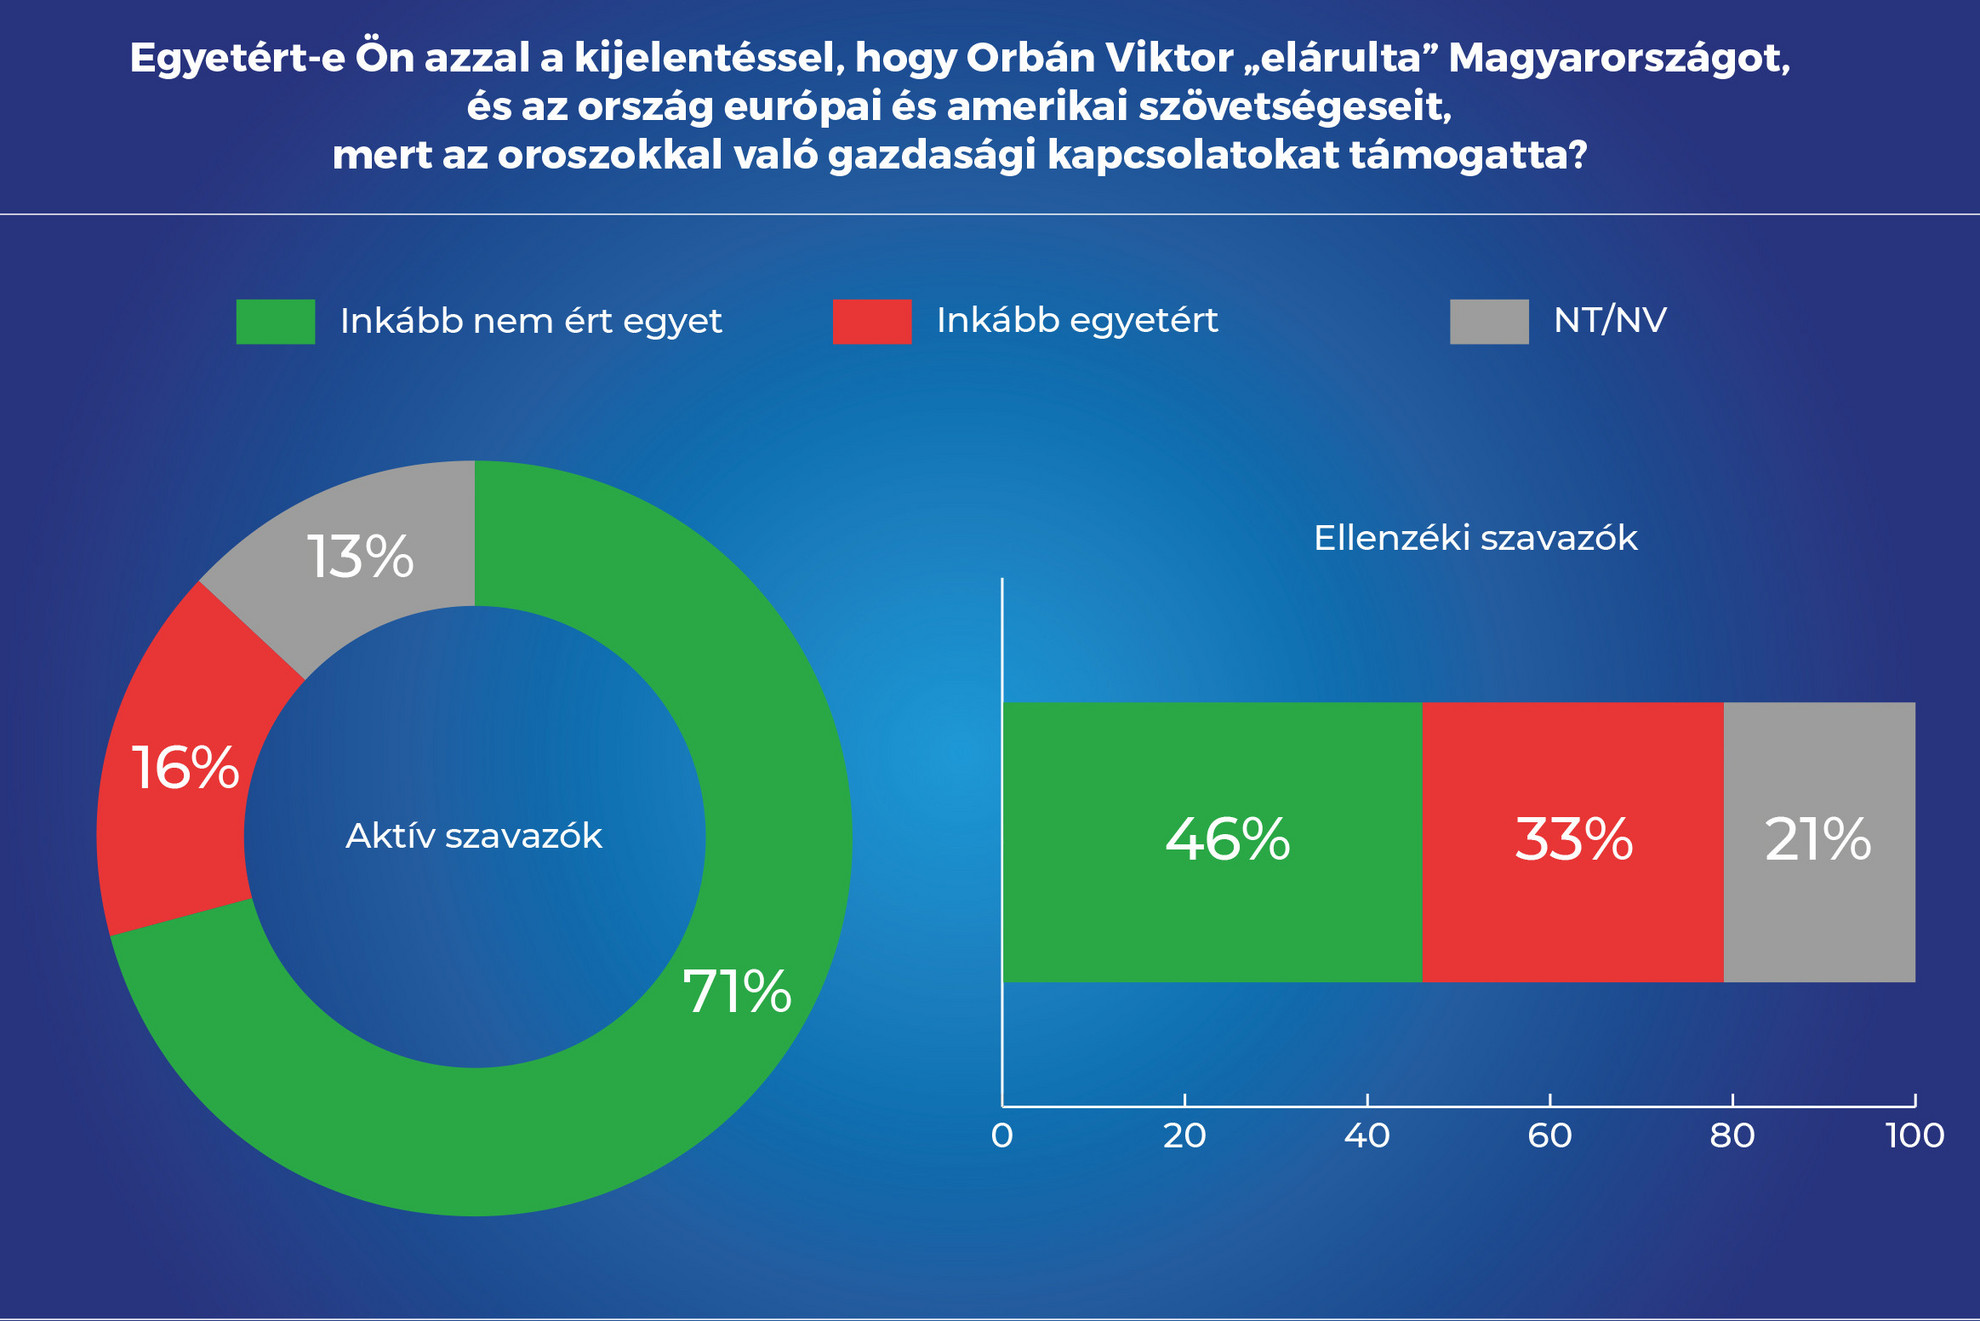 Alapjogokért Központ: Pragmatikus gazdasági együttműködésre van szükség a magyarok szerint